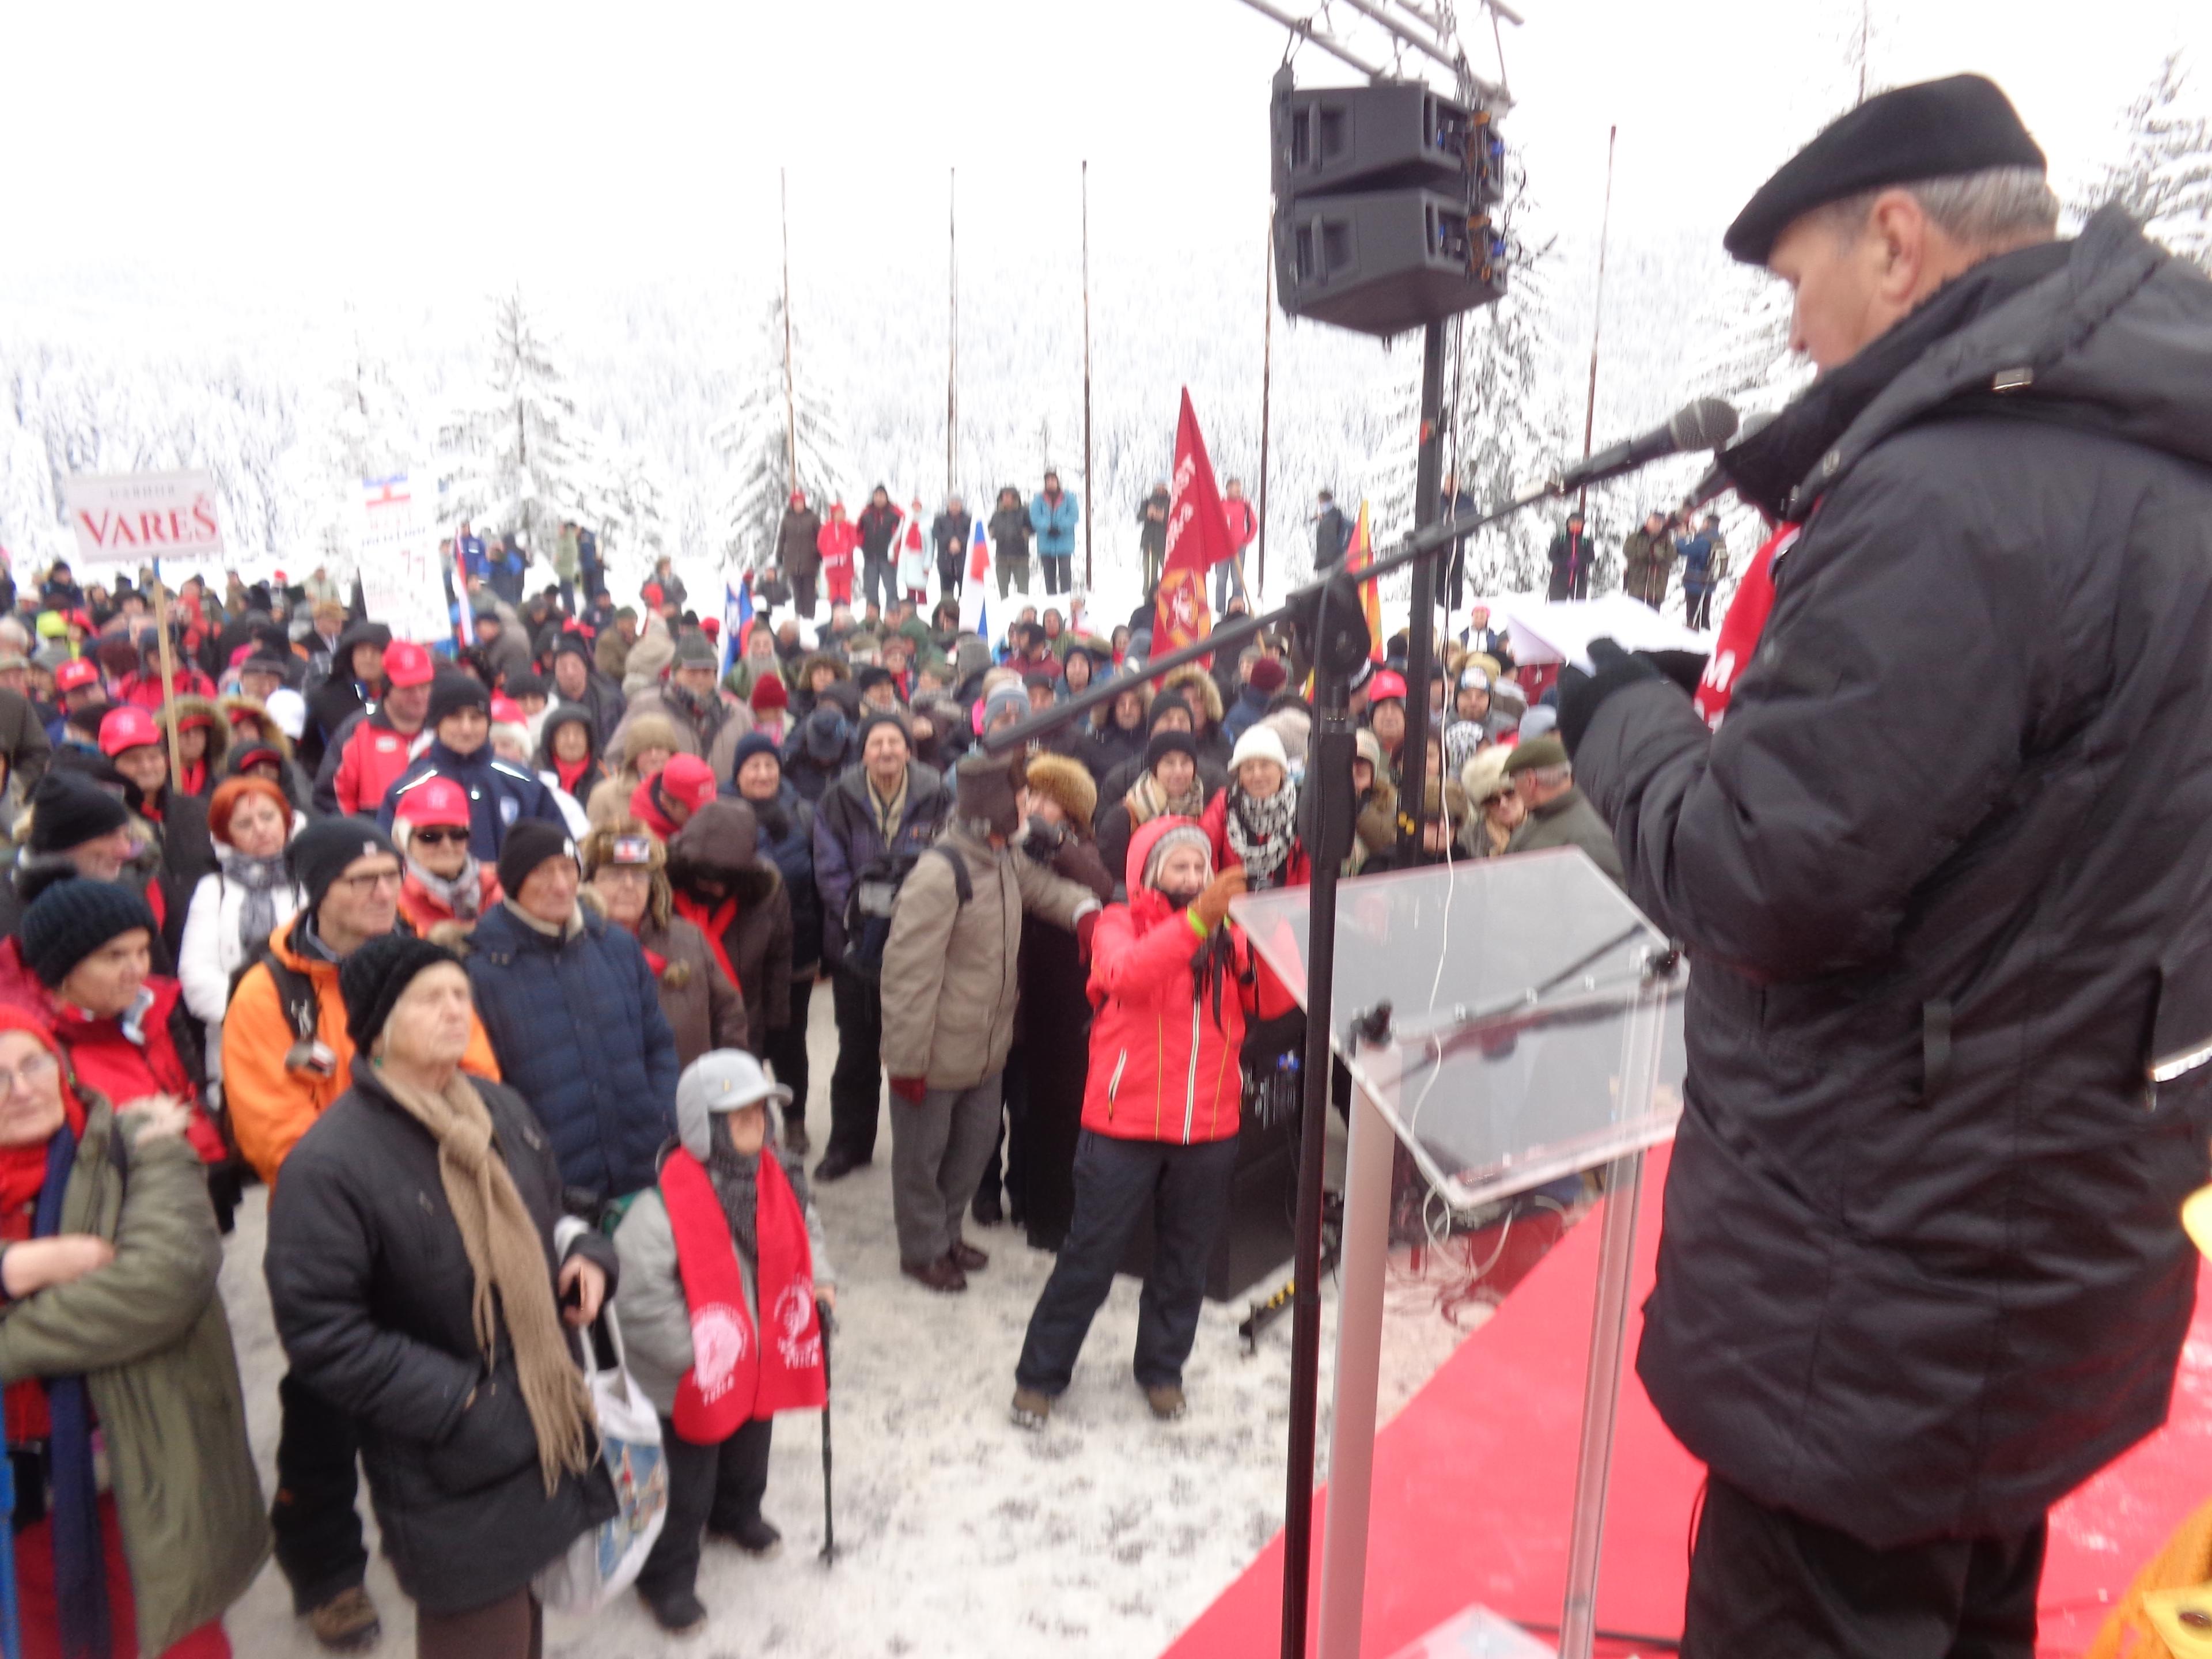 Obilježena 77. godišnjica Igmanskog marša, učestvovalo 15.000 učesnika